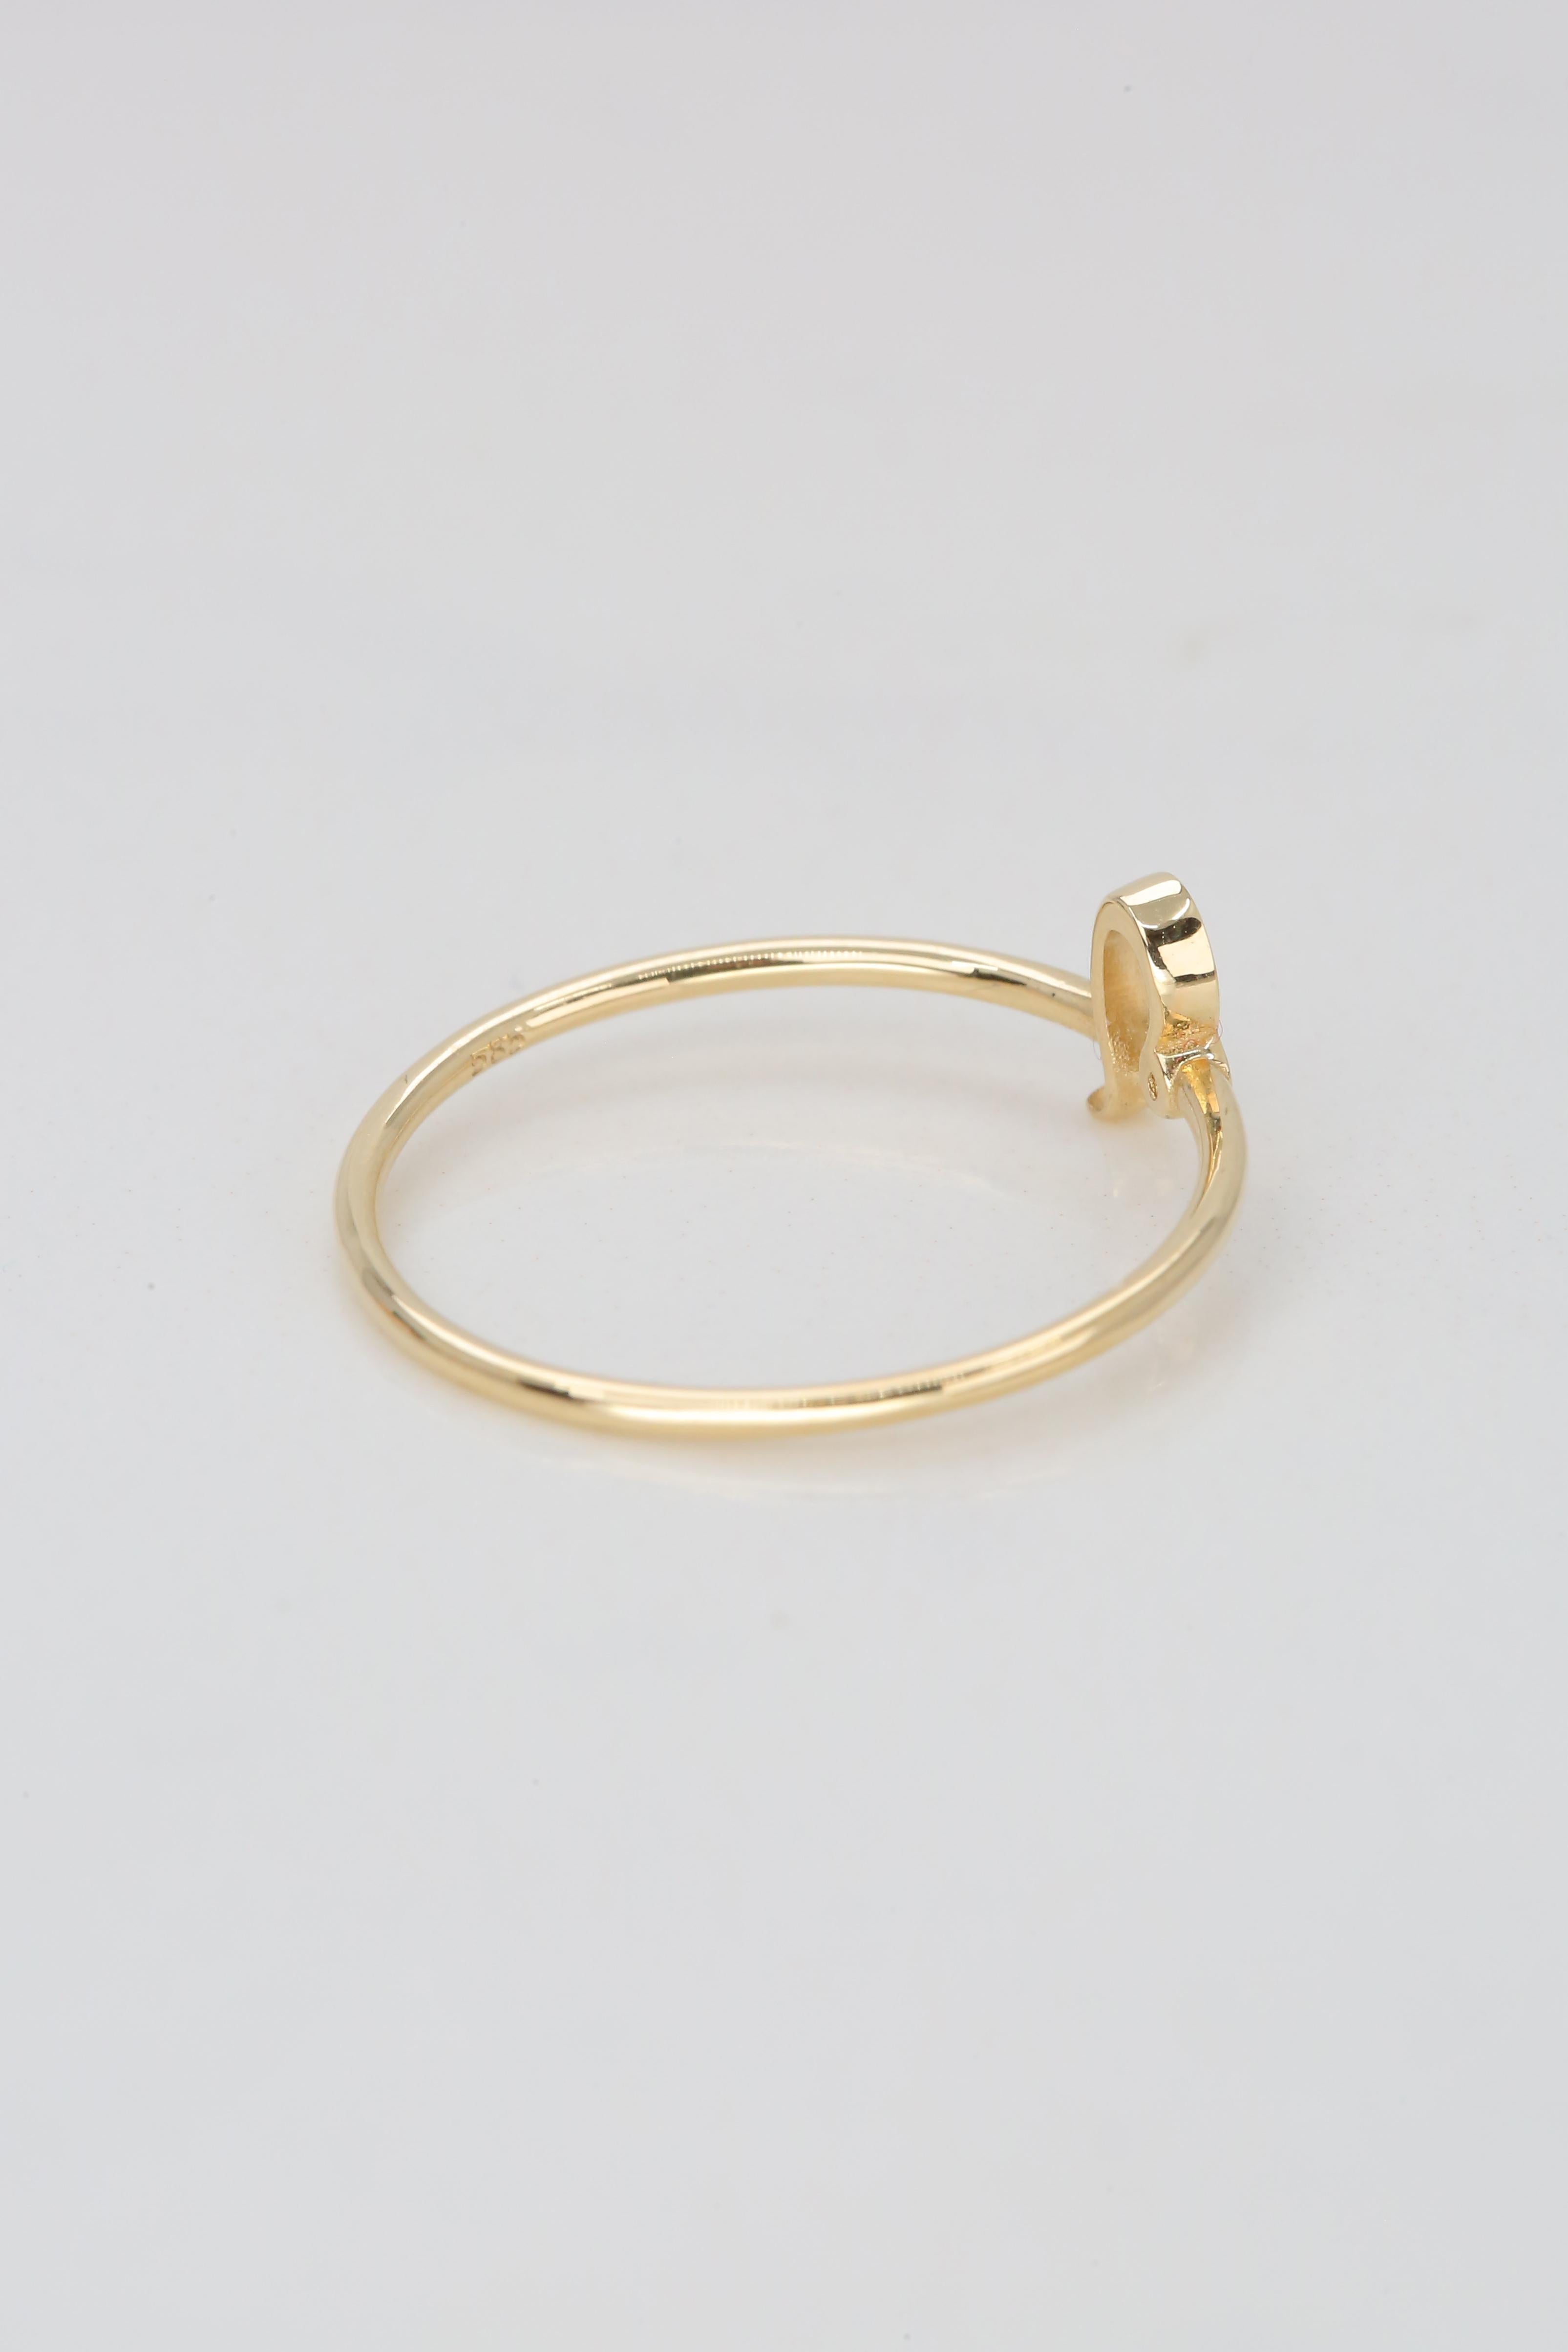 For Sale:  14K Gold Leo Zodiac Ring, Leo Sign Zodiac Ring 7